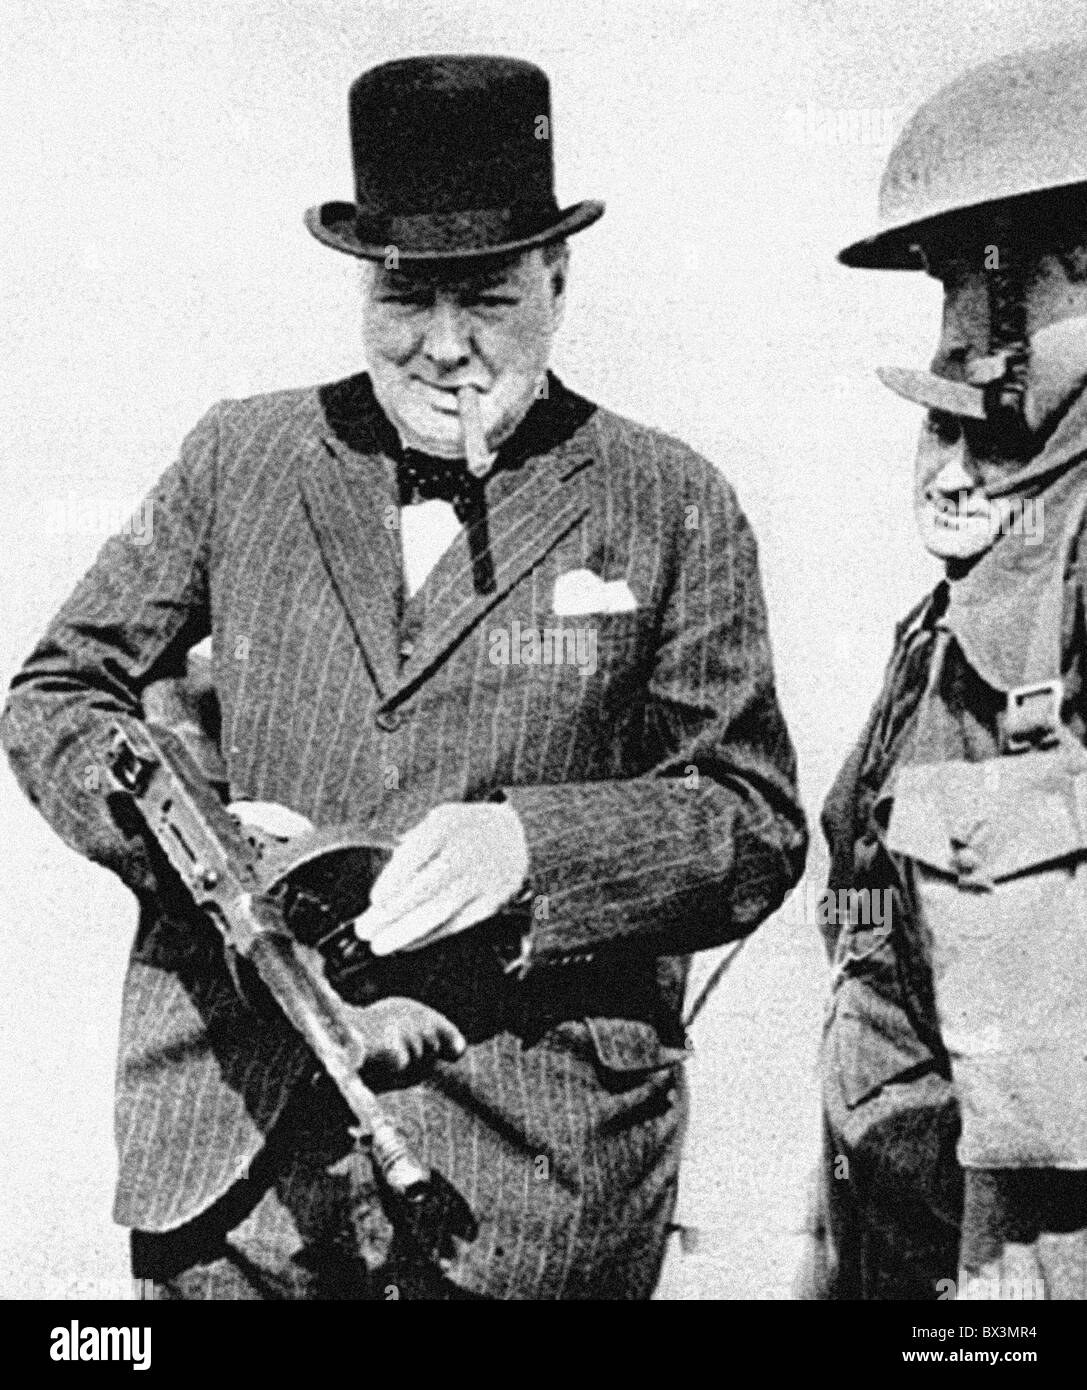 Sir Winston Churchill pendant la Seconde Guerre mondiale Banque D'Images